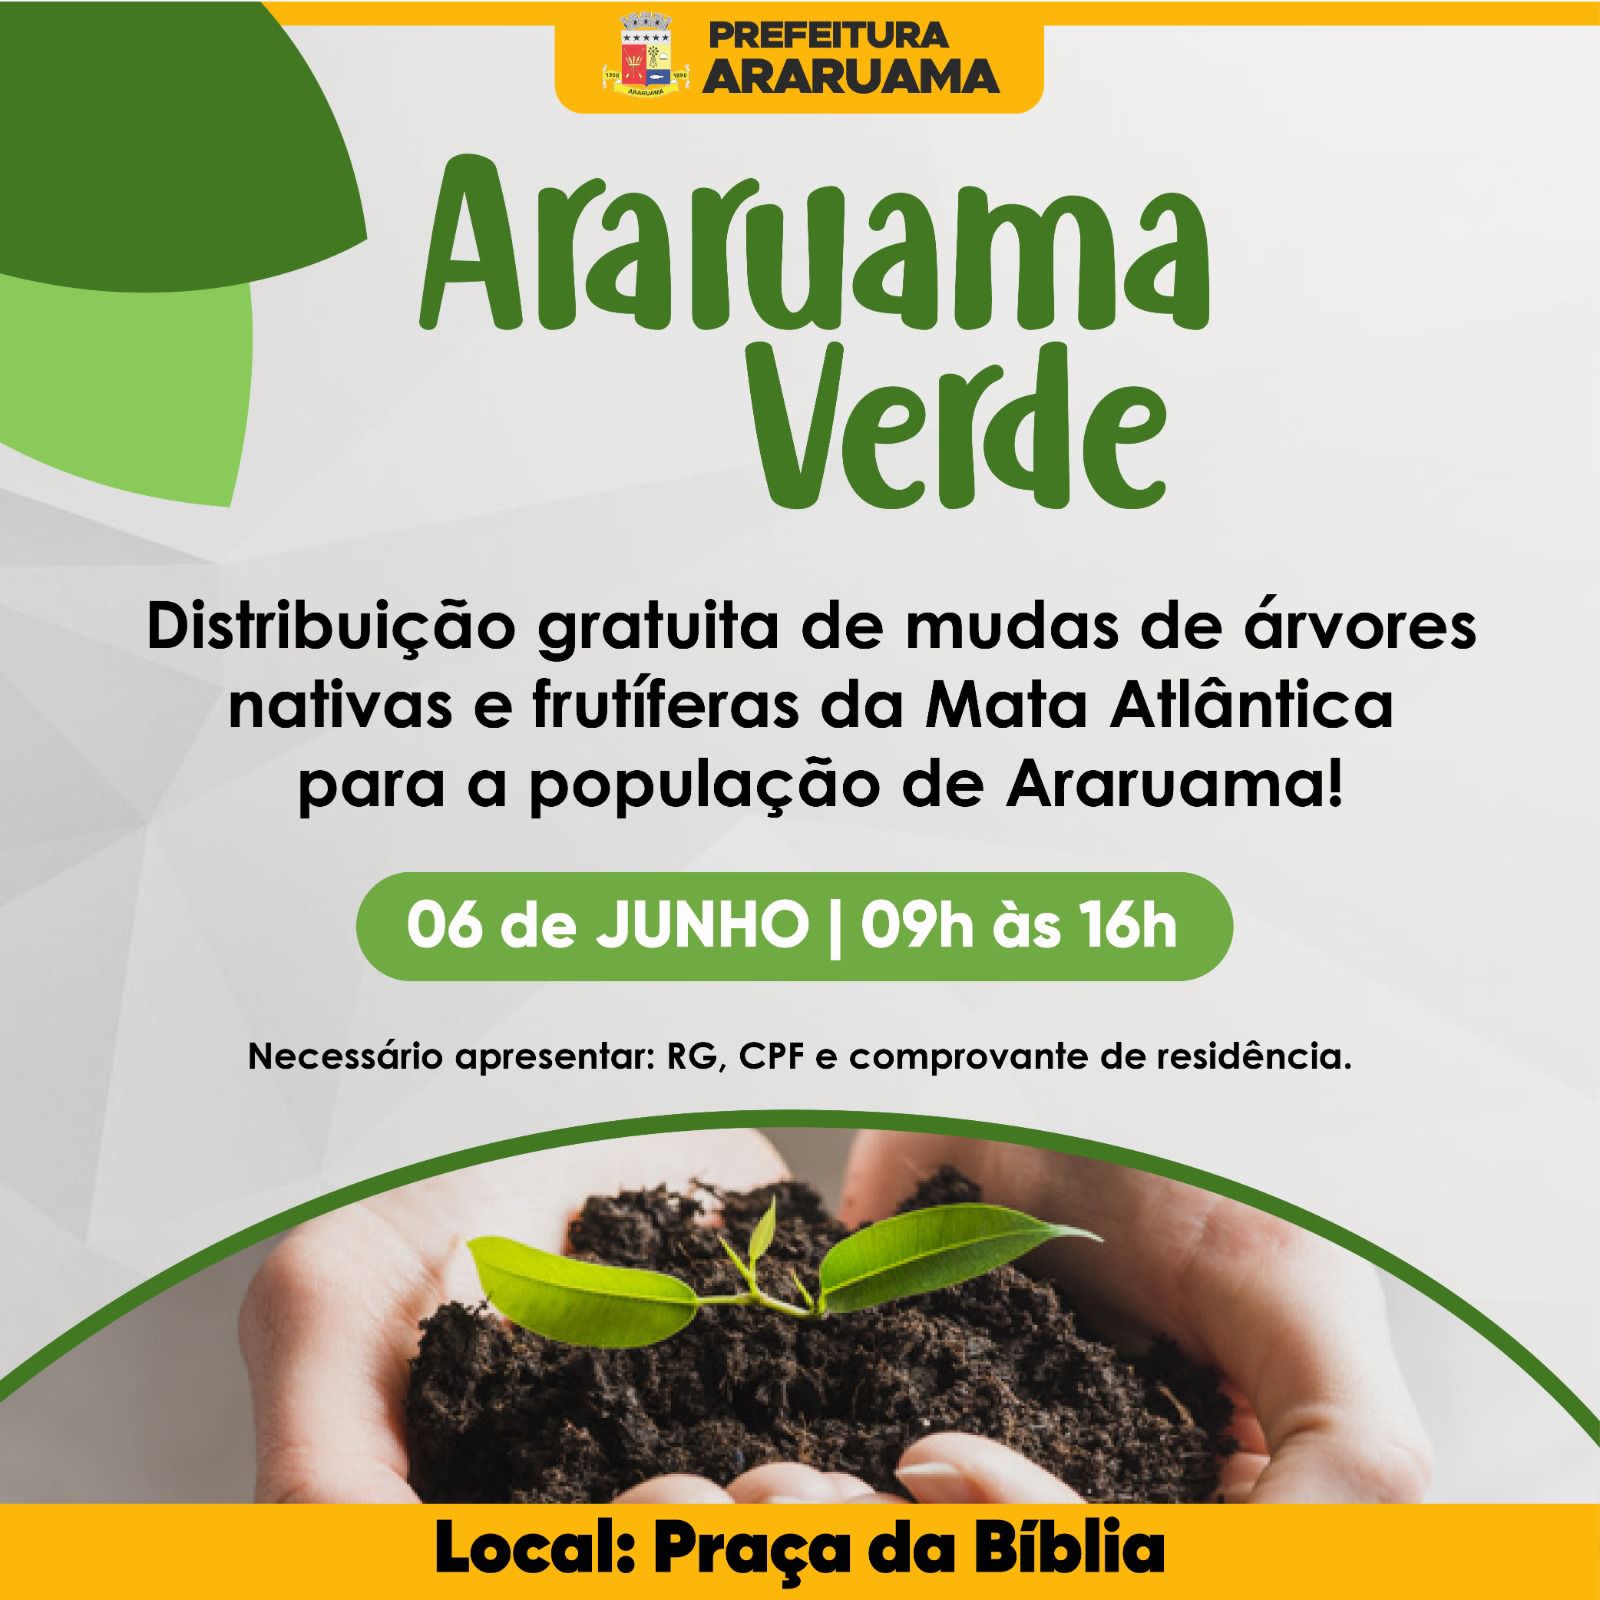 Prefeitura de Araruama vai realizar a distribuição gratuita de mudas nativas aos moradores